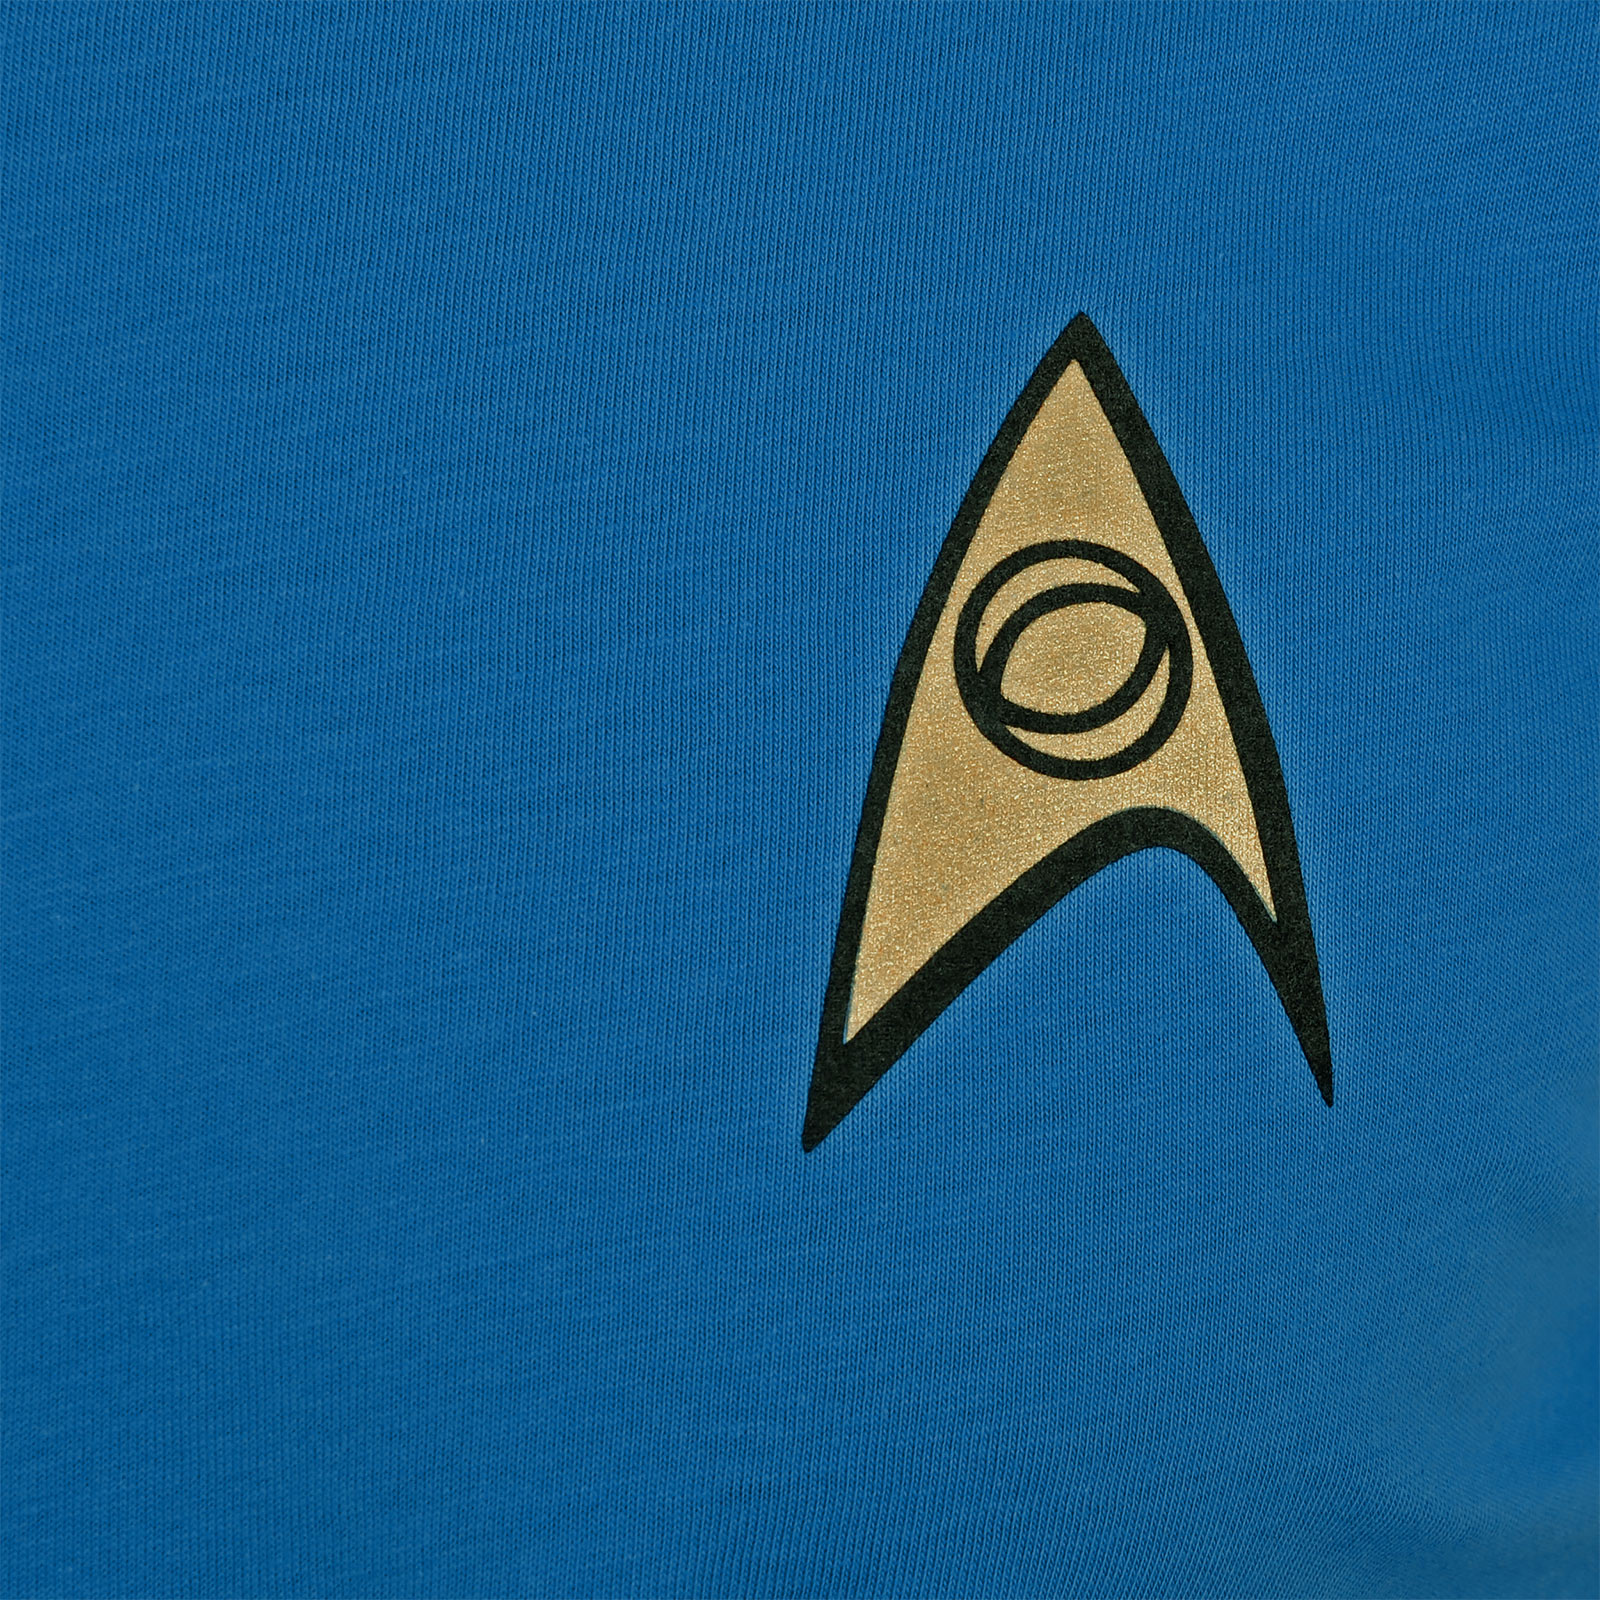 Star Trek - T-shirt bleu uniforme de Mister Spock